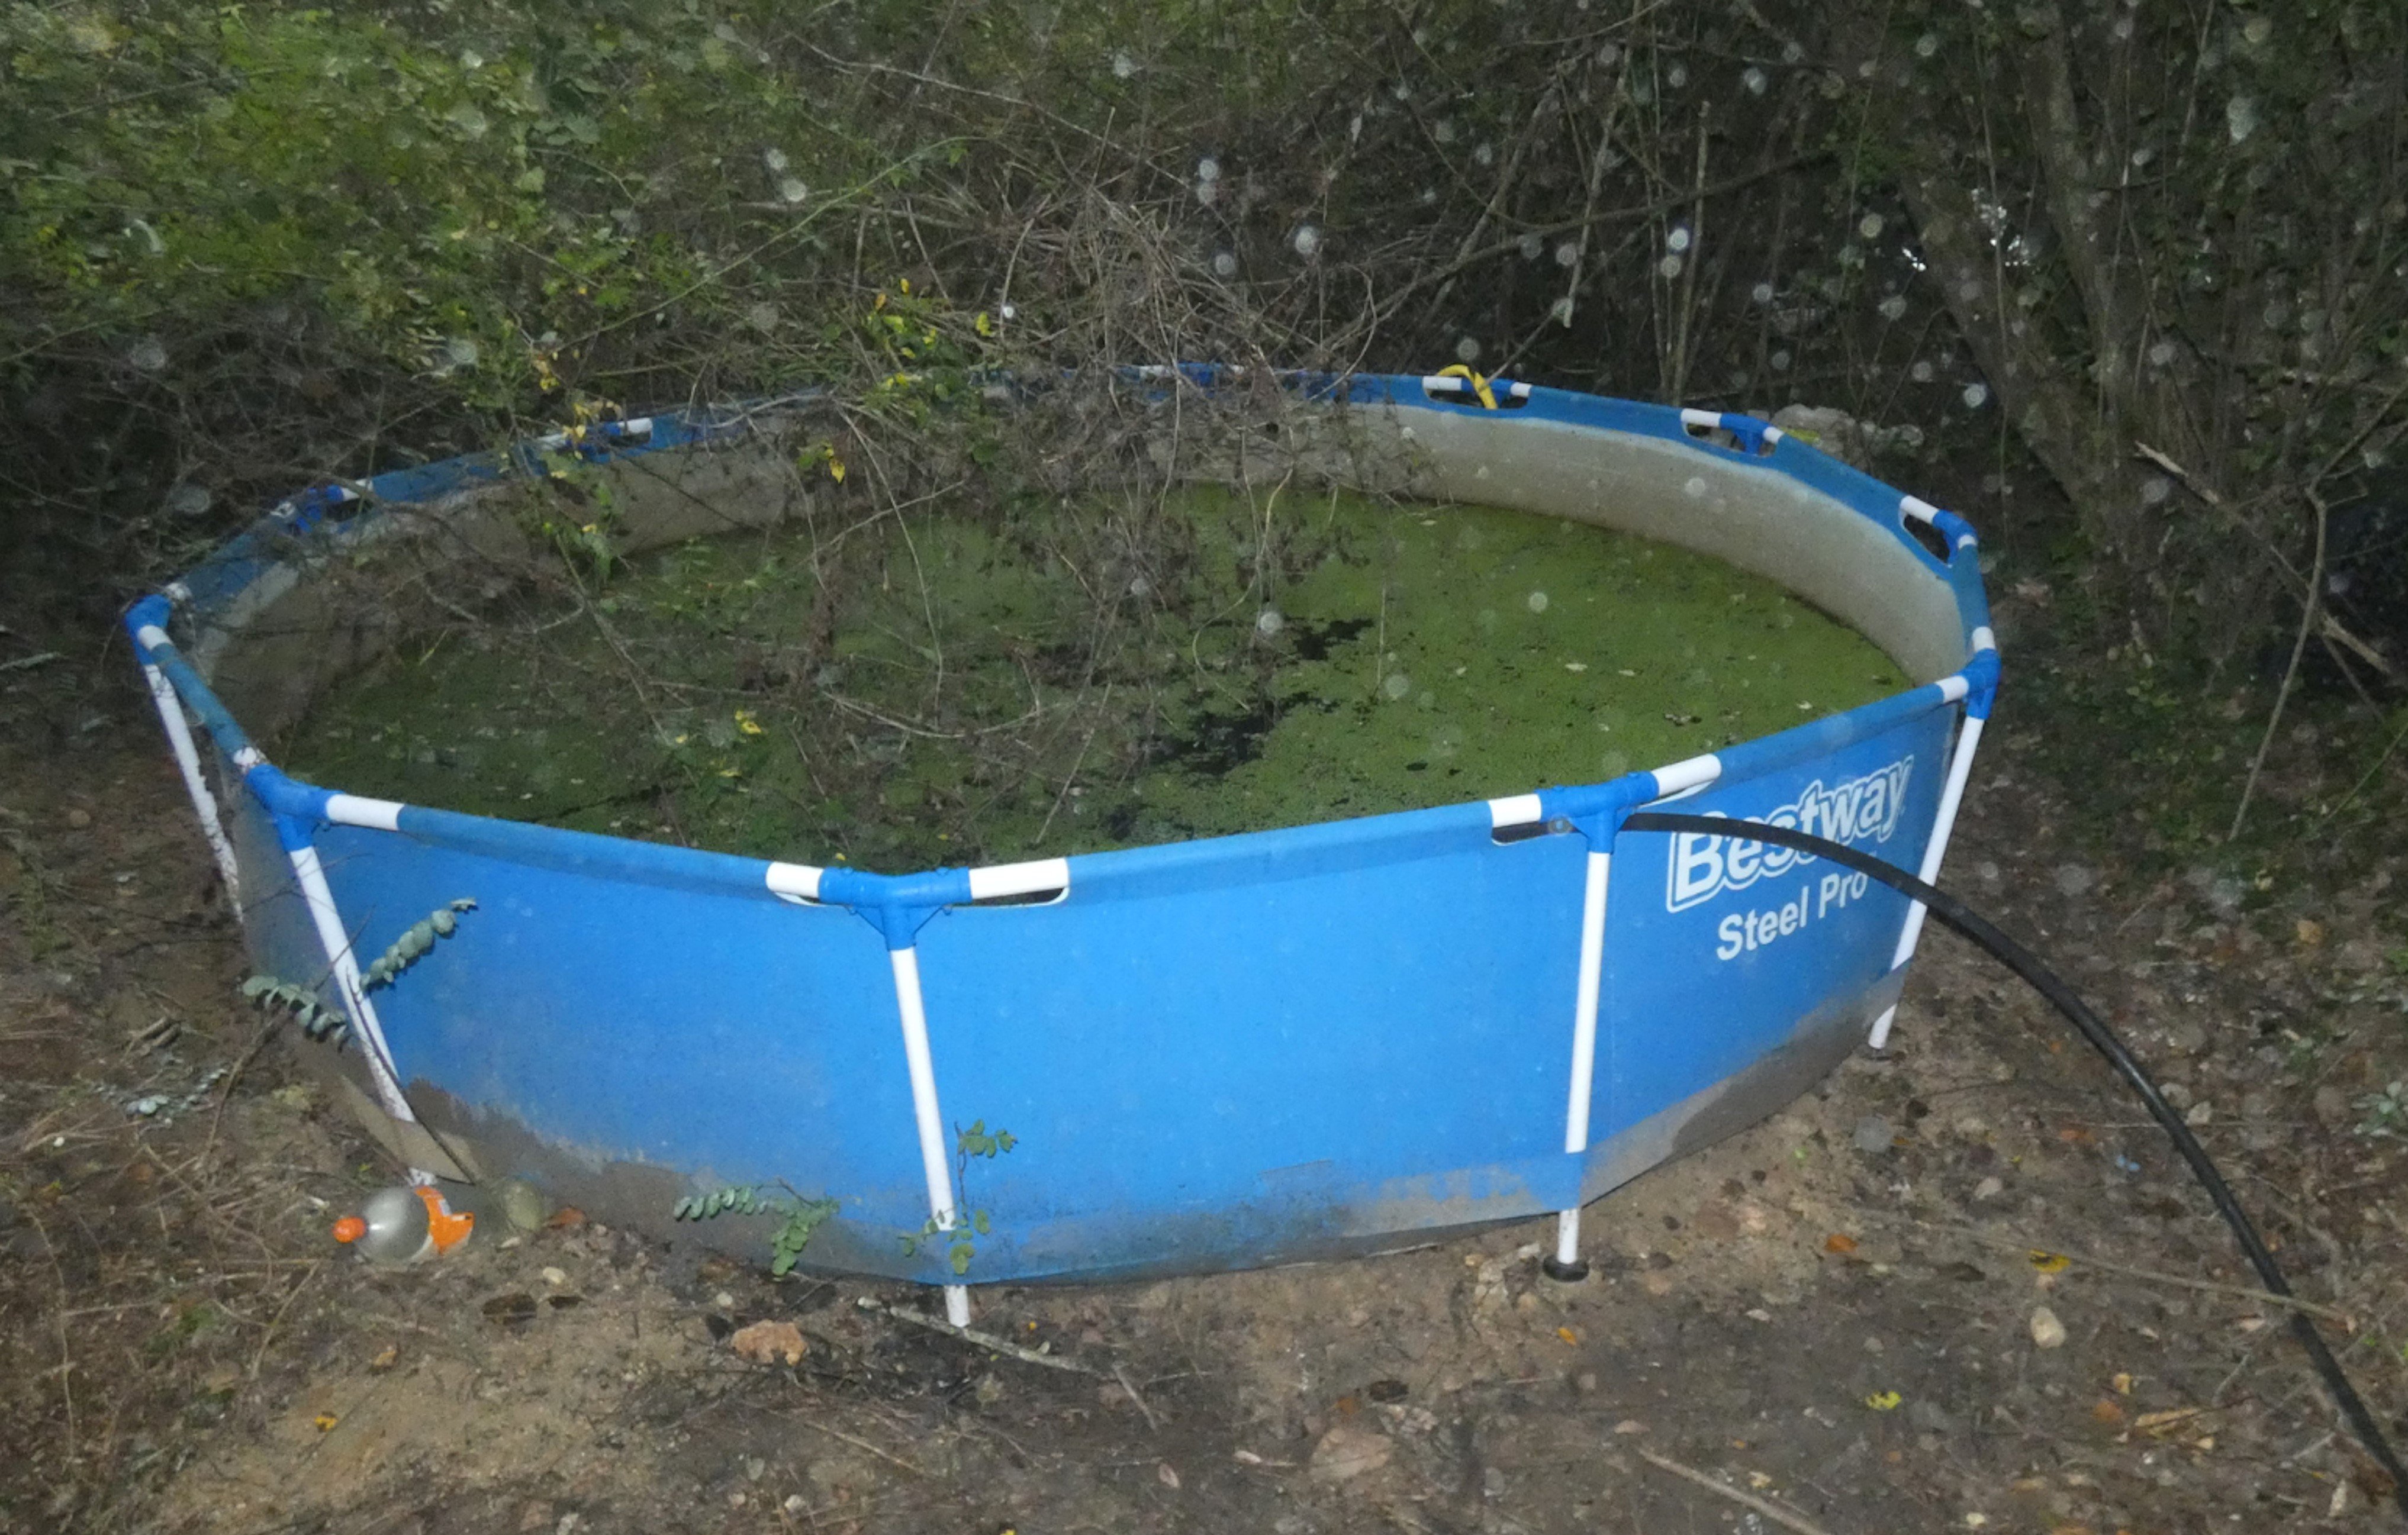 La piscina que hi havia al campament que havien muntat els detinguts al bosc de Vidreres, i que els servia per regar la plantació de marihuana amagada enmig del bosc / MOSSOS D'ESQUADRA